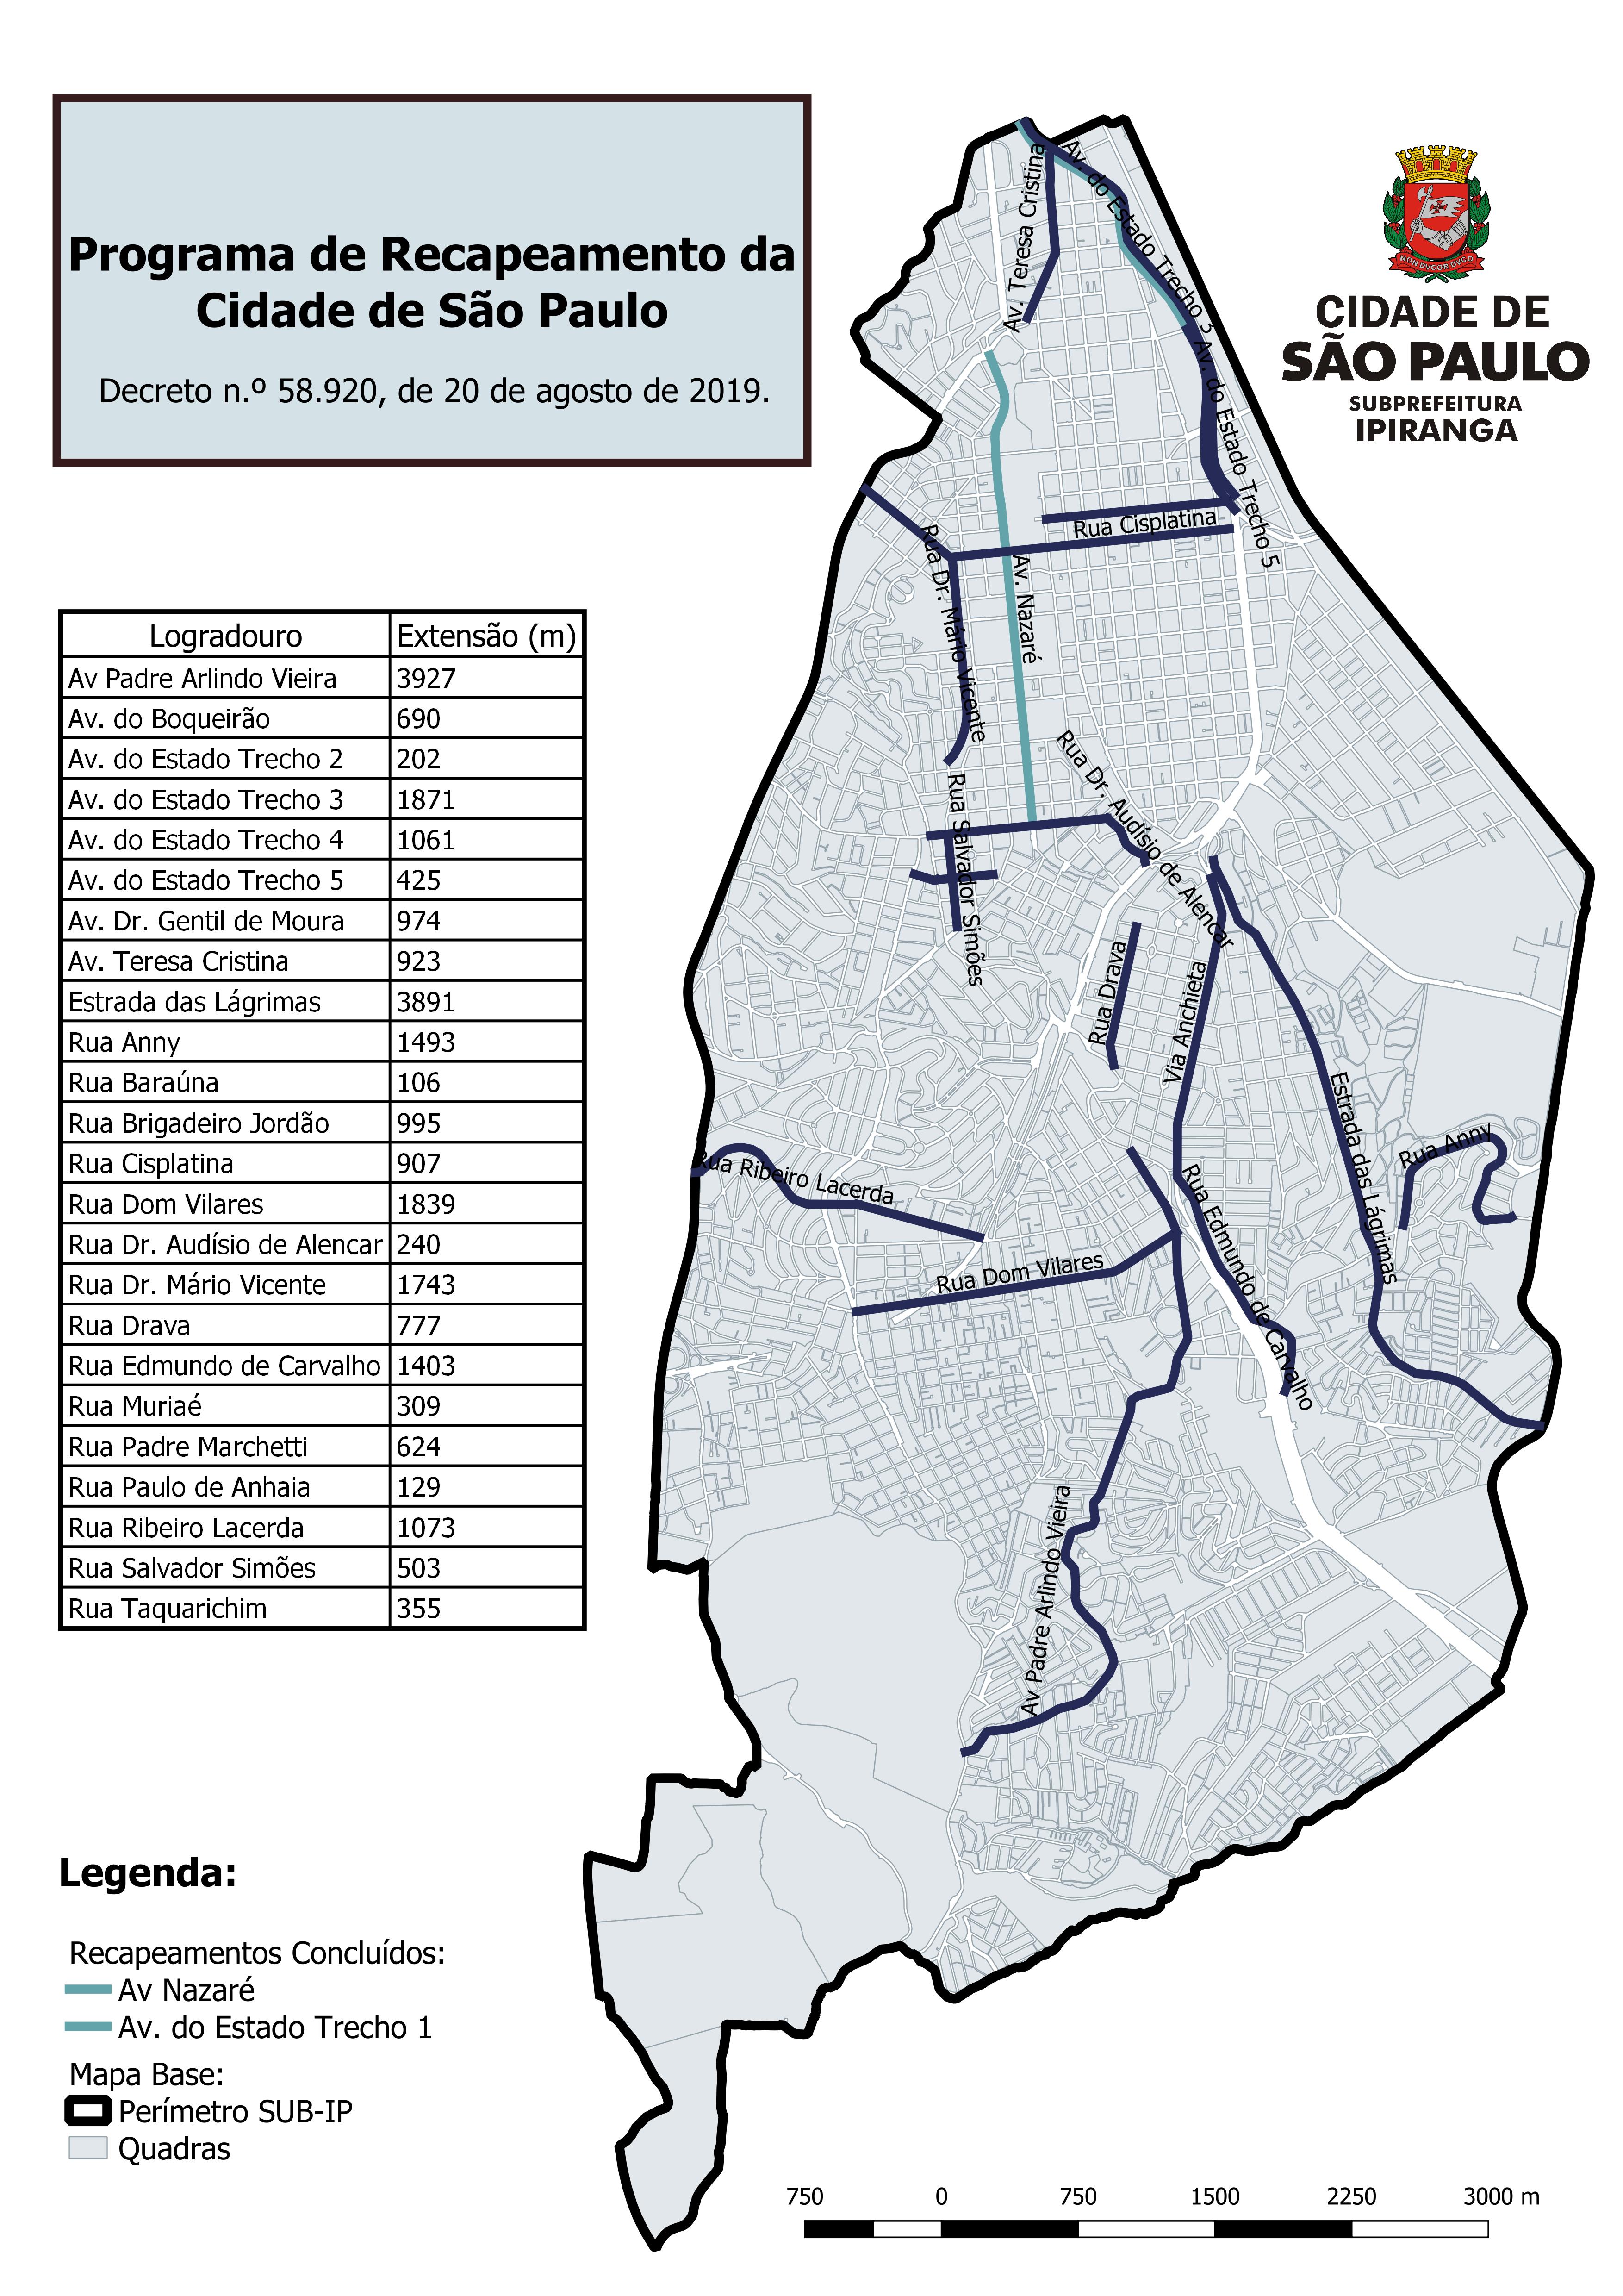 Mapa do Ipiranga indicando o Programa de Recapeamento da Cidade de São Paulo